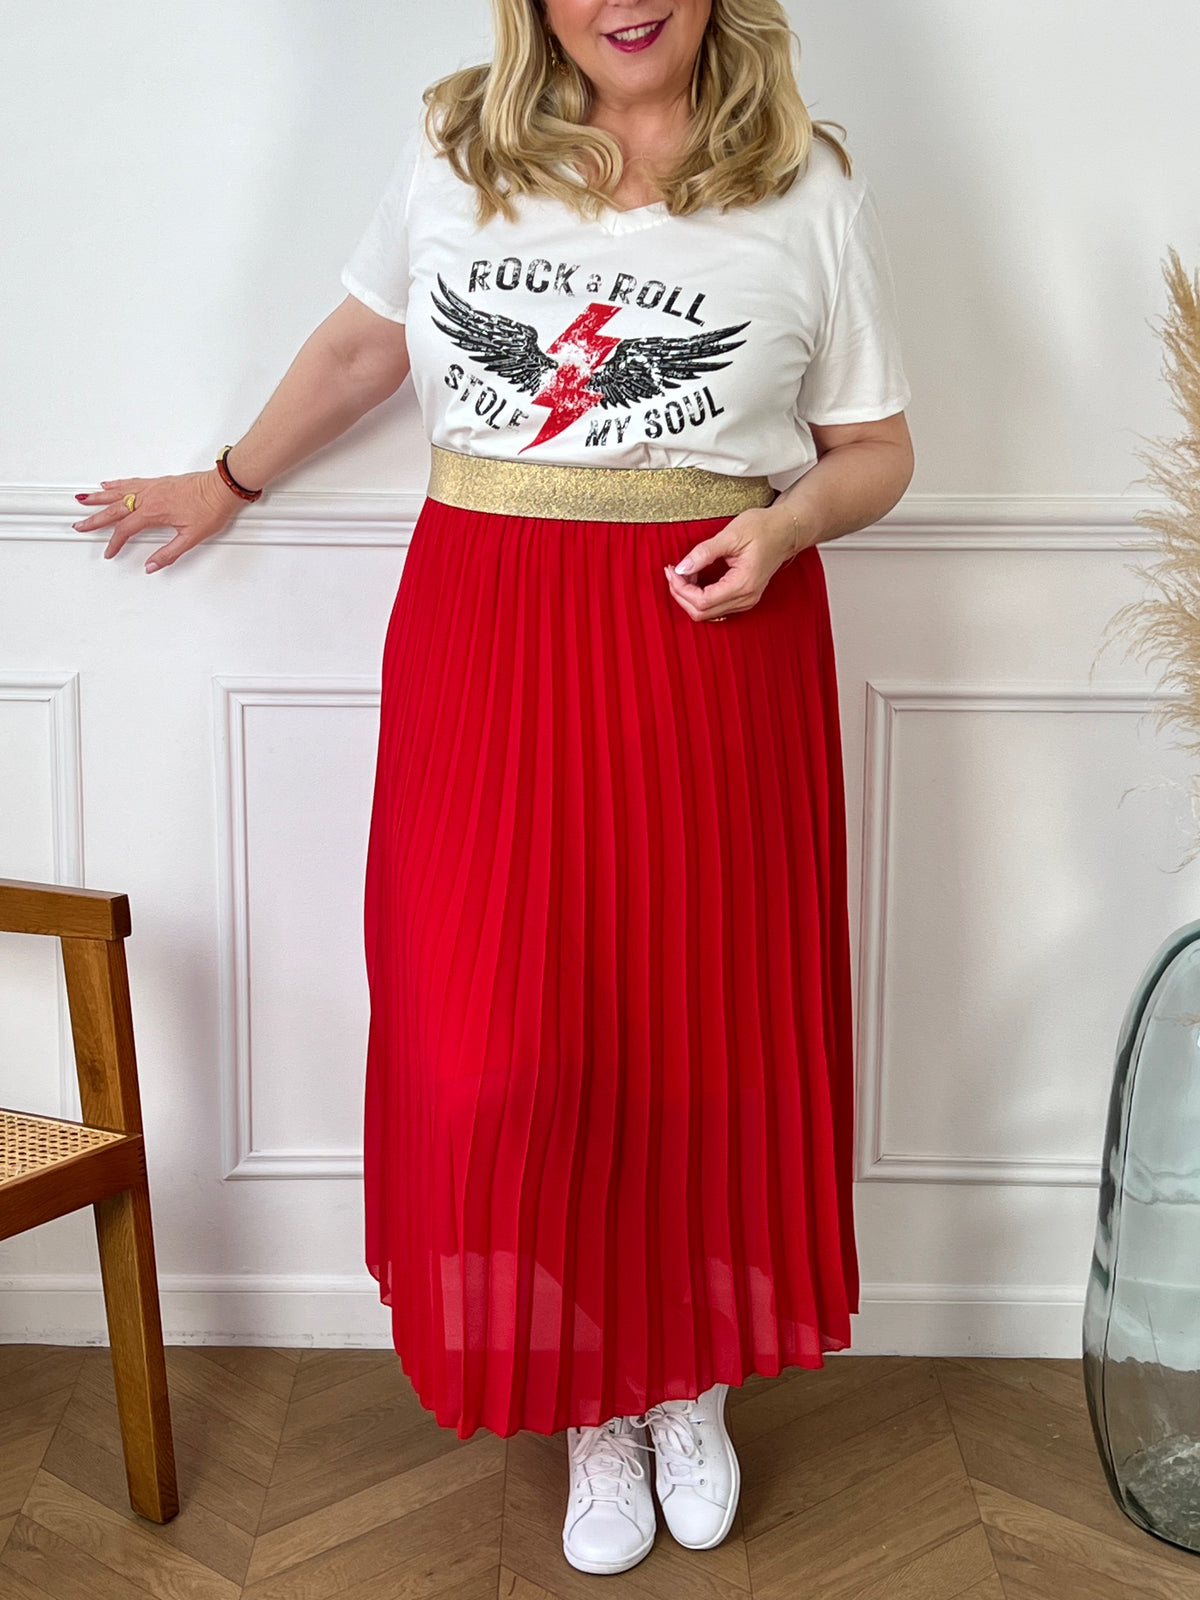 La jupe rouge plissée de grande taille incarne une élégance intemporelle. Avec sa coupe longue et plissée, elle offre une silhouette flatteuse et tendance. La couleur rouge ajoute une touche sexy et polyvalente, parfaite pour diverses occasions. Cette pièce allie style et confort, créant une tenue sophistiquée et moderne pour les femmes de grande taille.